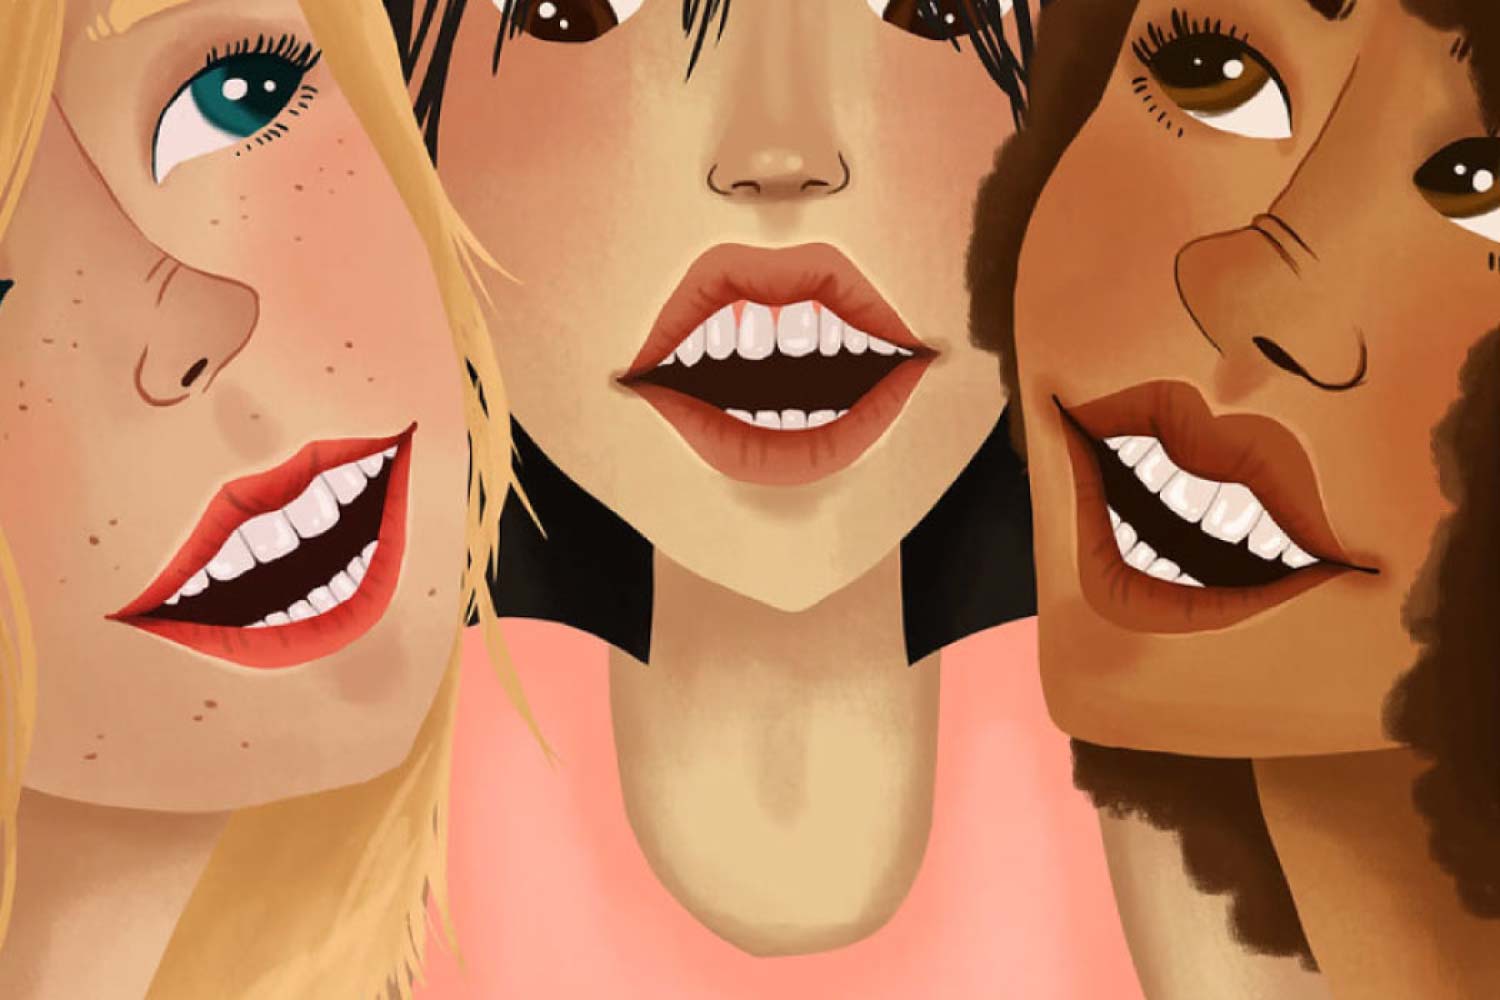 Three smiling cartoon women with dental veneers.